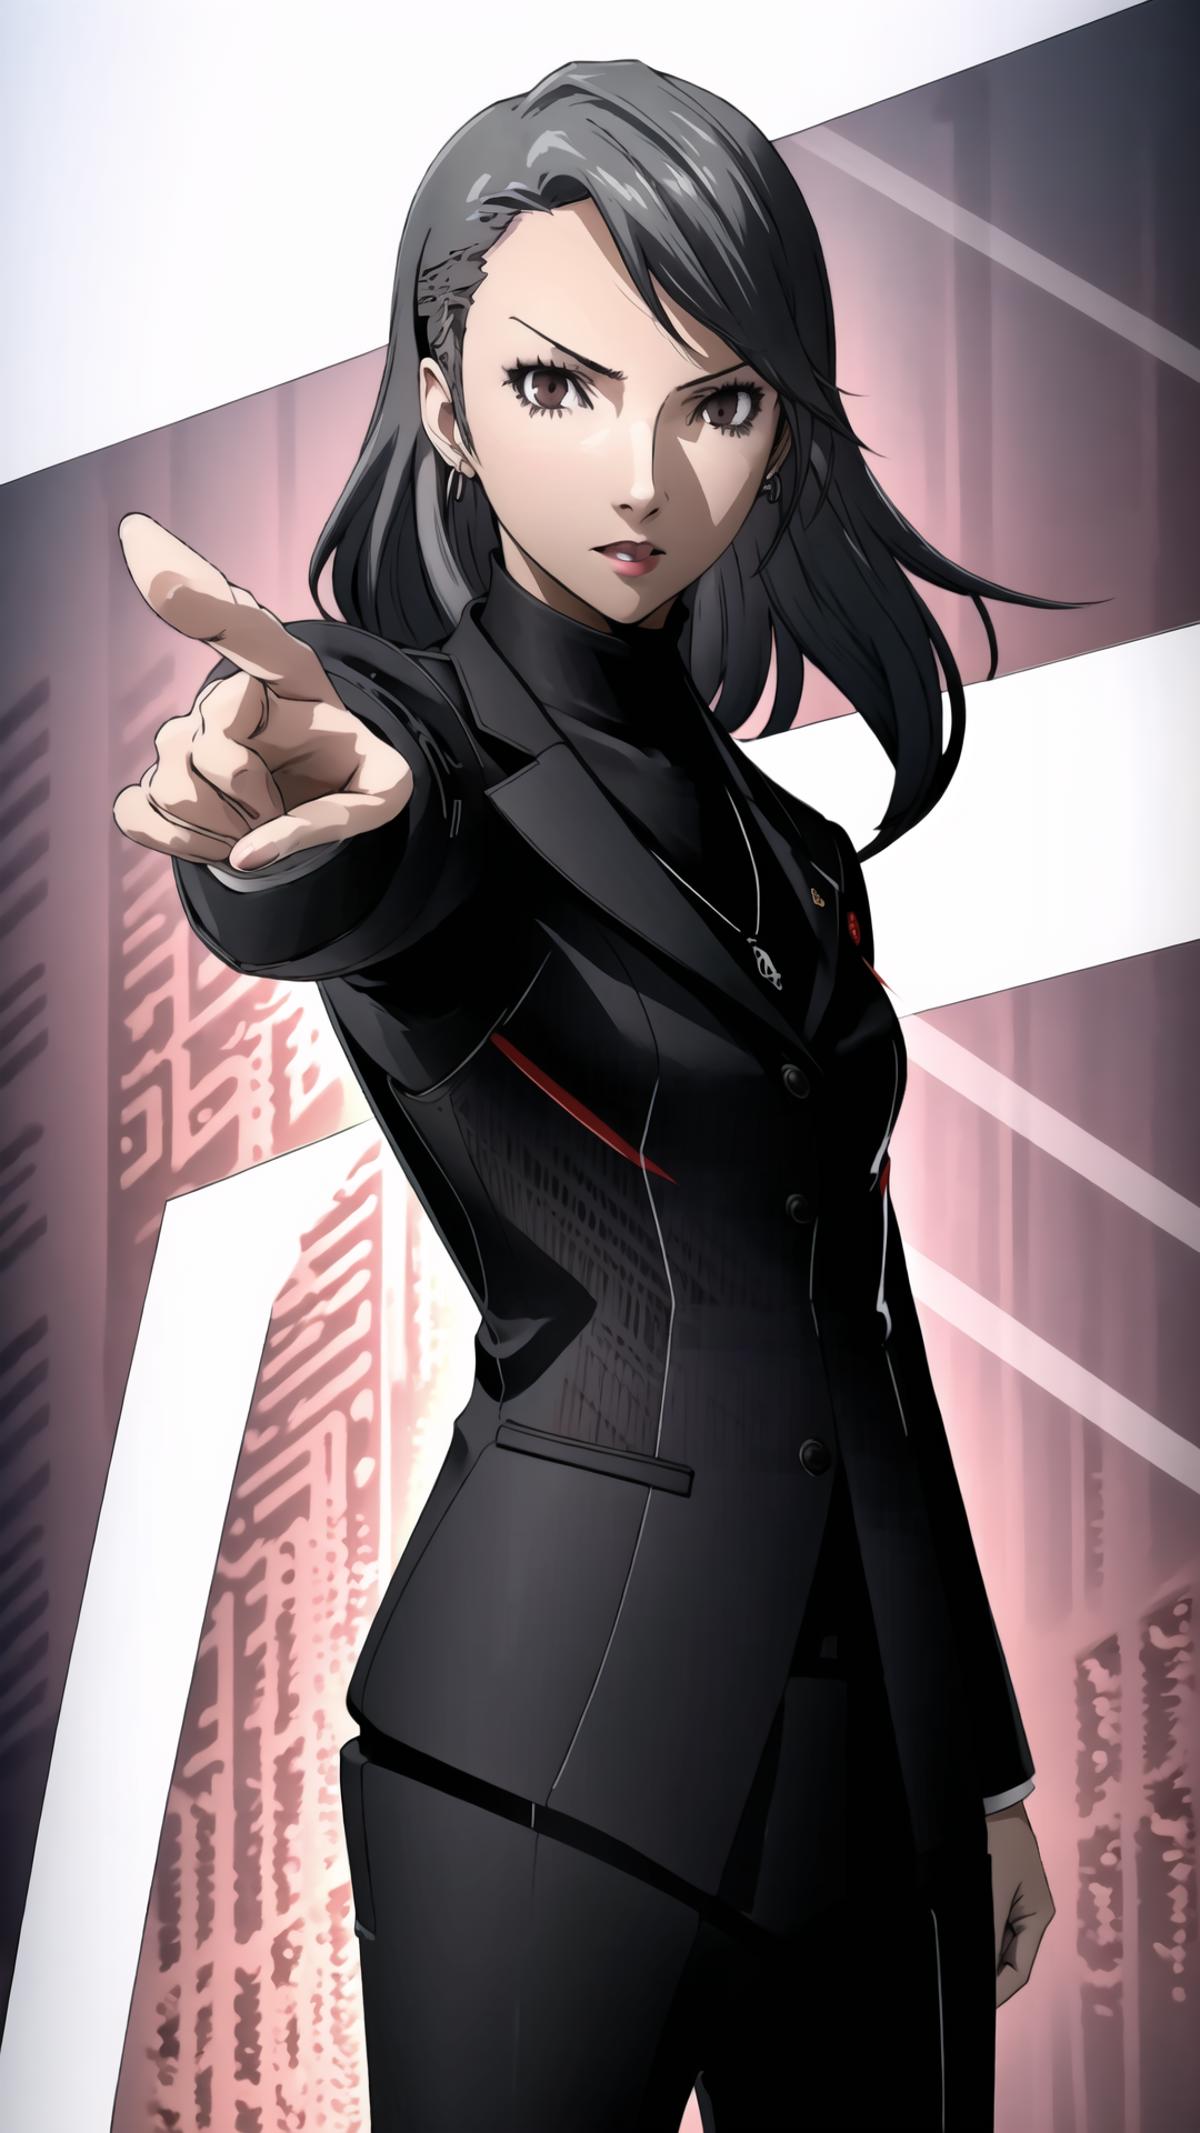 Sae Niijima - Persona 5 image by HC94